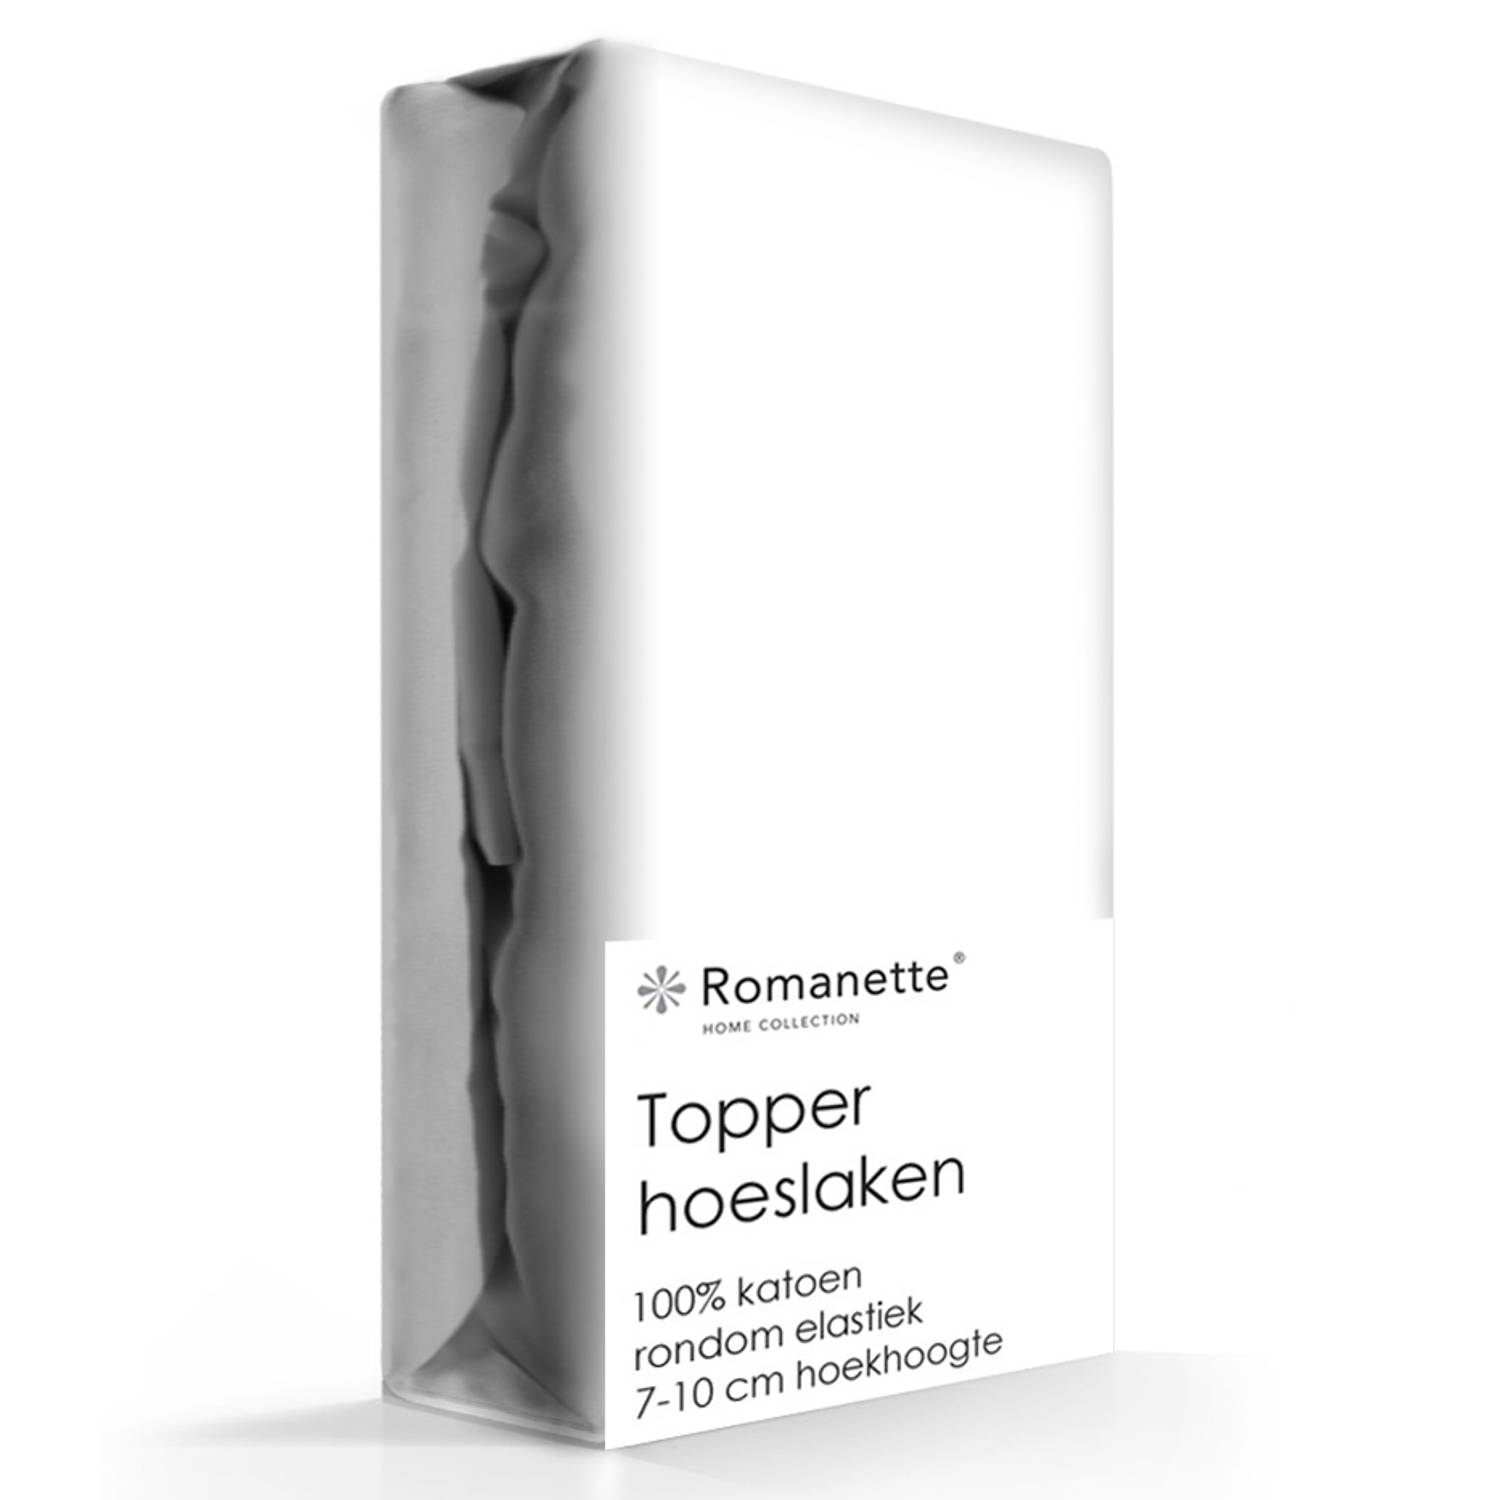 Romanette Topper Hoeslaken Hoge hoek wit 100% Katoen 1-persoons DE XXL 100x220